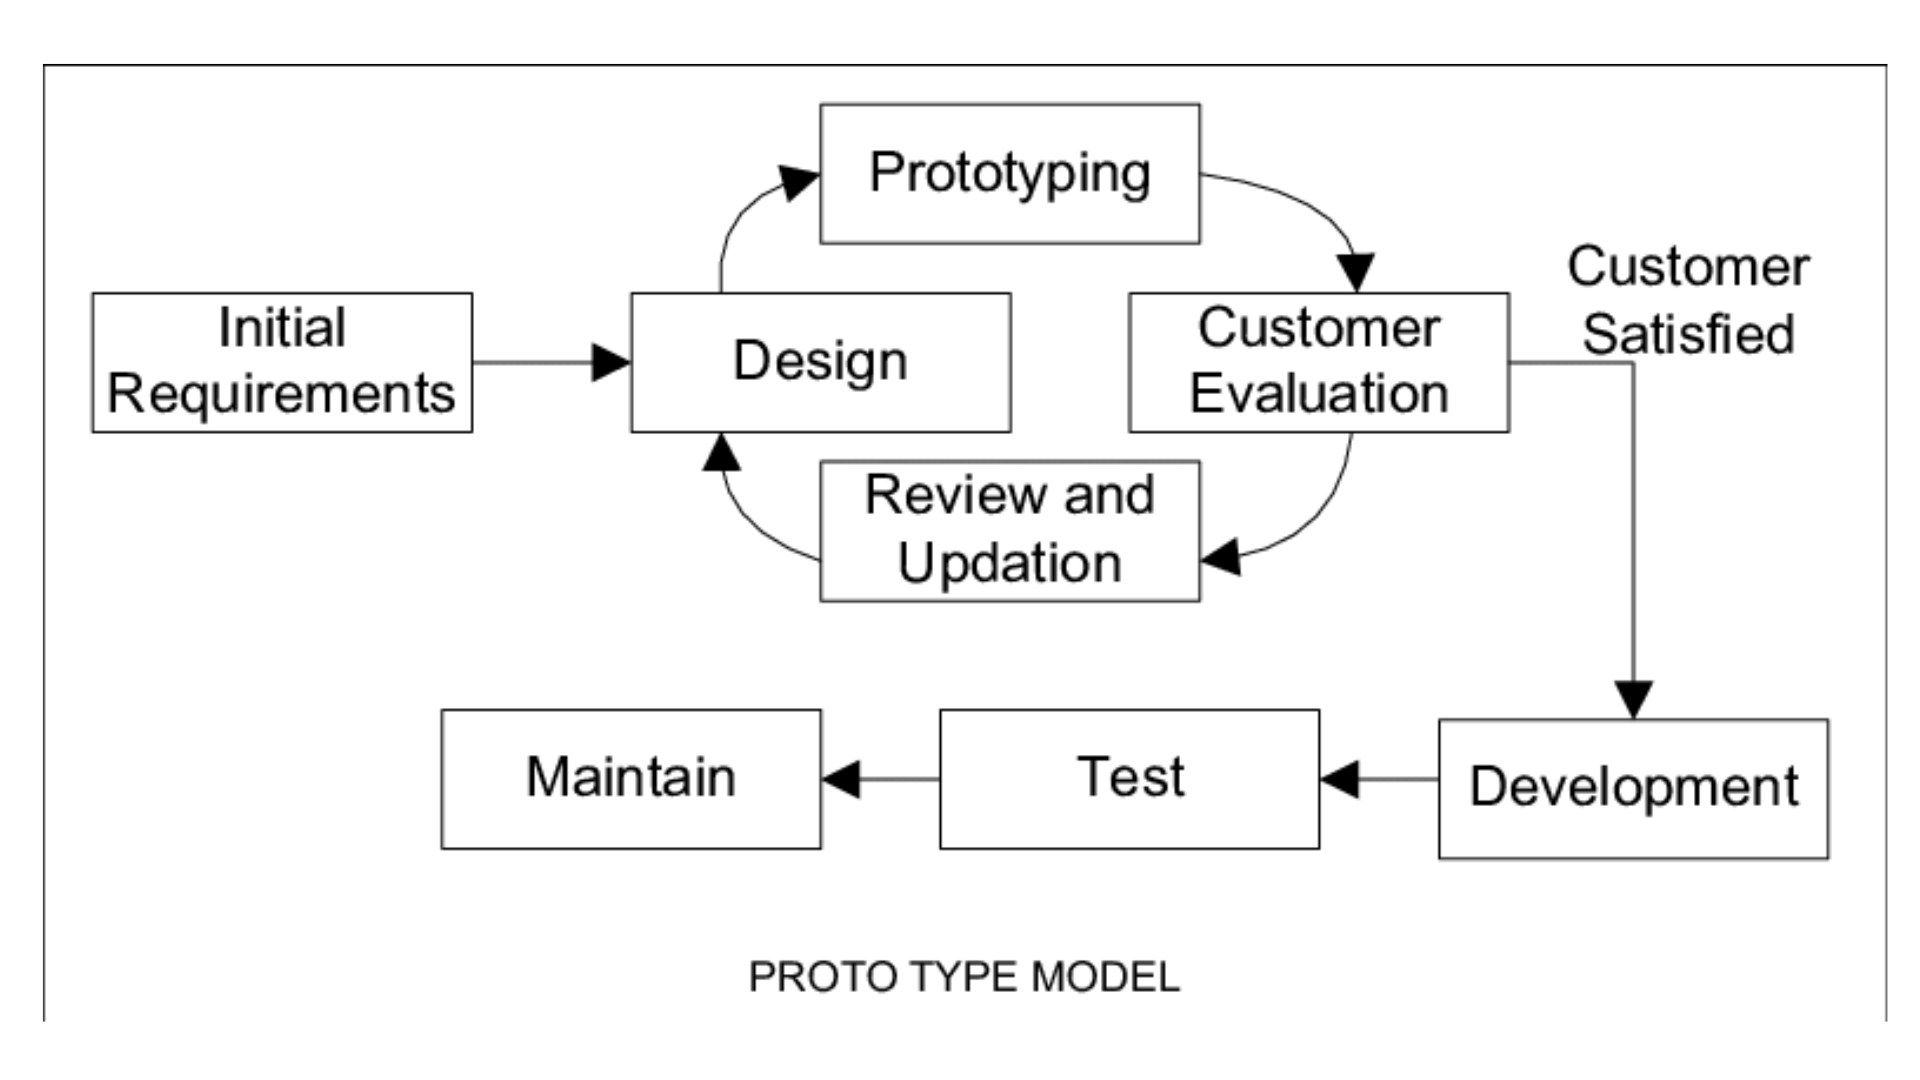 Prototype Model